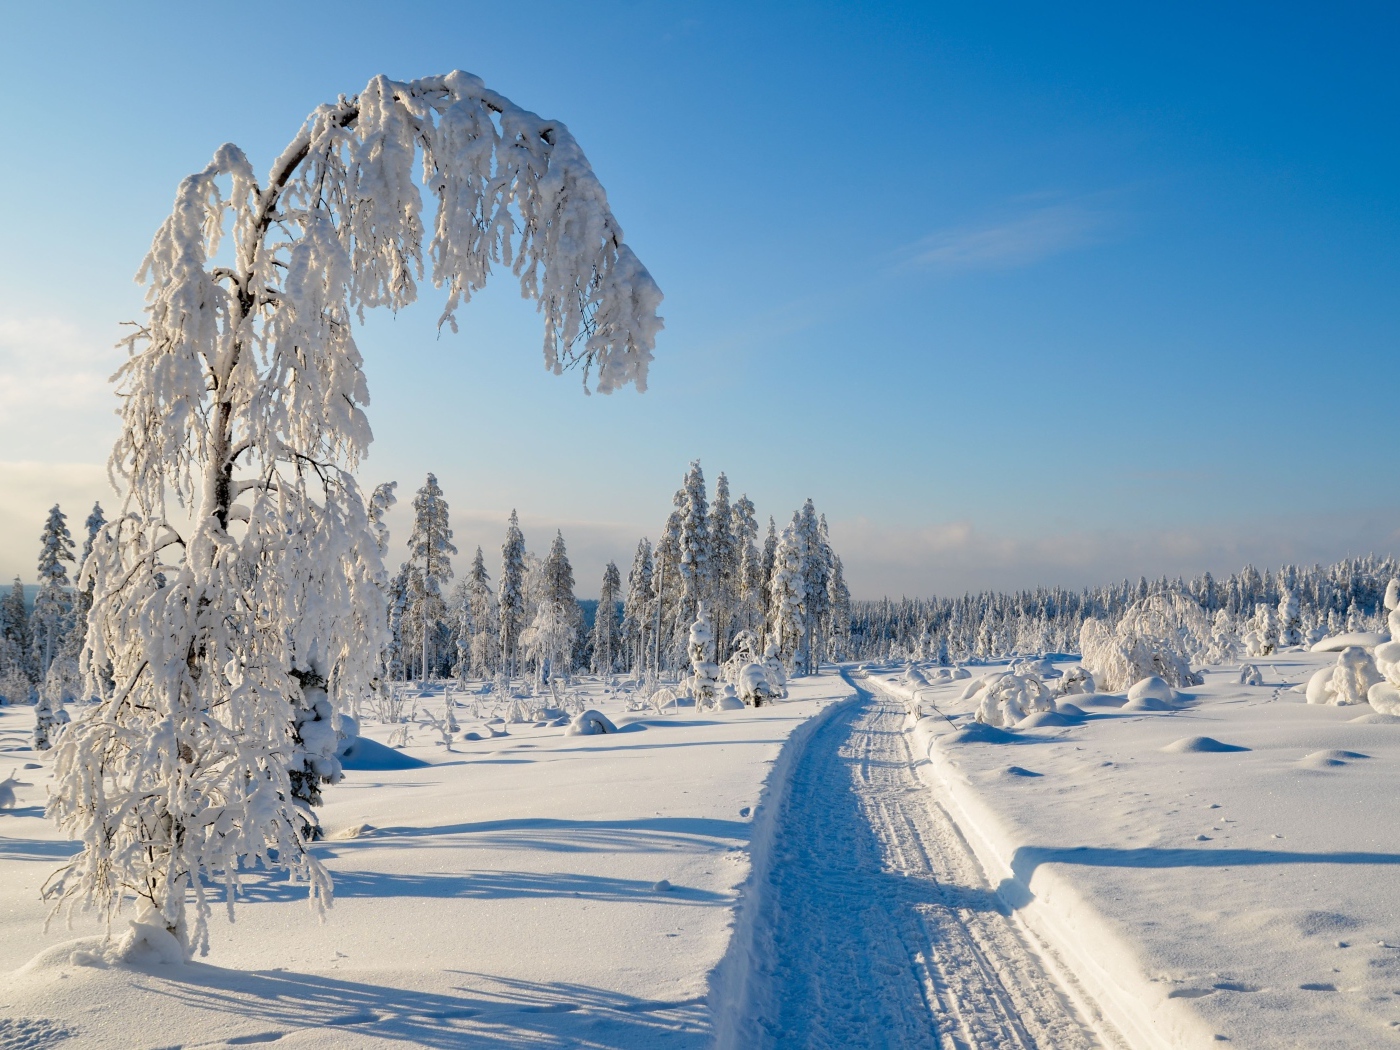 Заснеженная дорога у покрытых инеем деревьев солнечным зимним днем